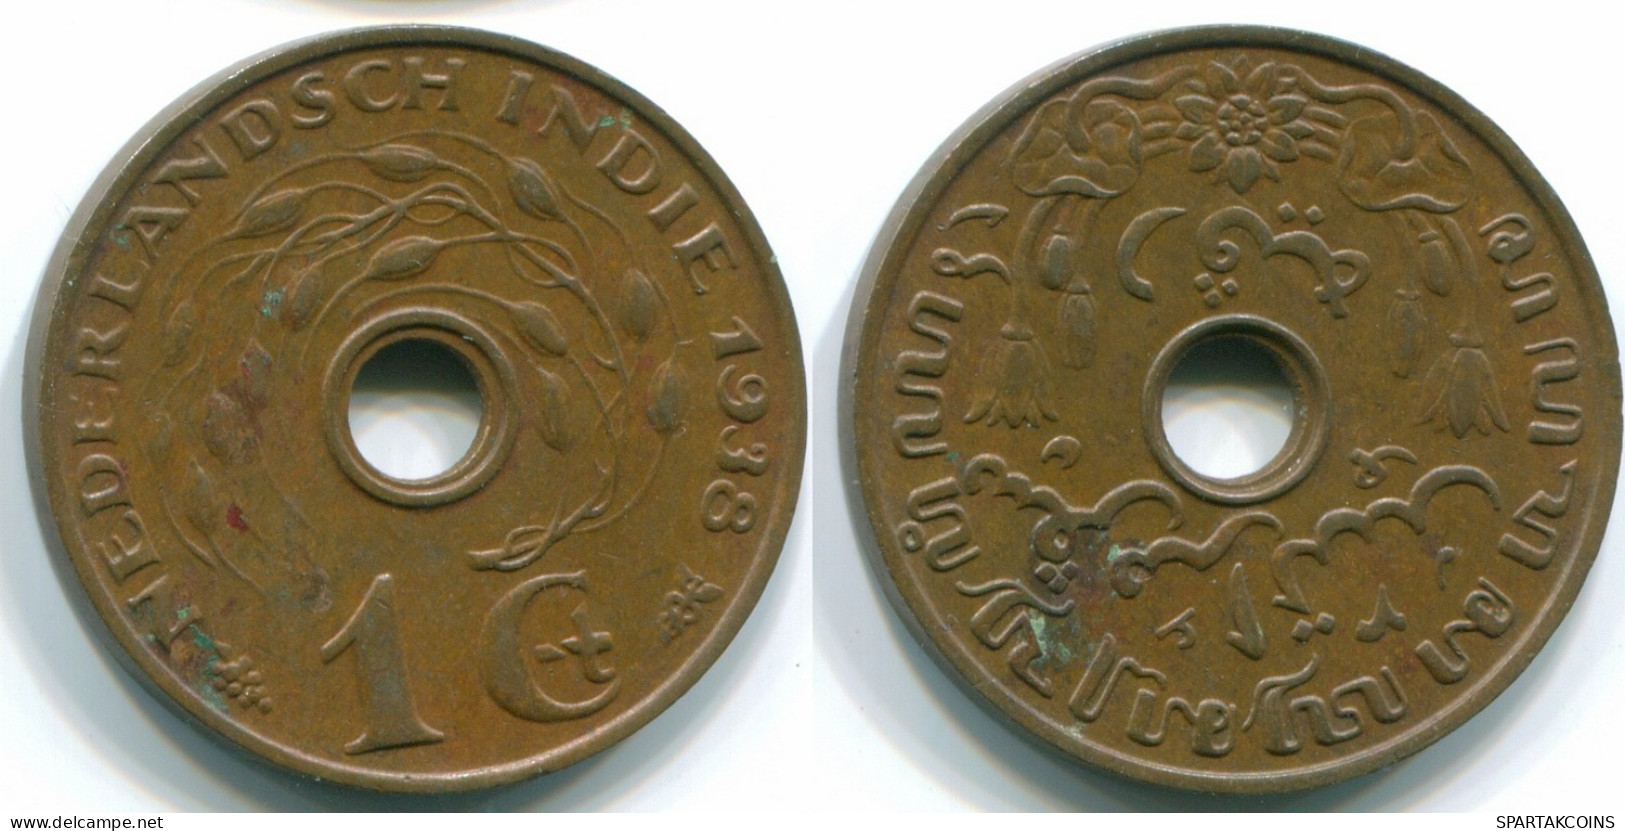 1 CENT 1938 INDES ORIENTALES NÉERLANDAISES INDONÉSIE INDONESIA Bronze Colonial Pièce #S10269.F.A - Indes Néerlandaises